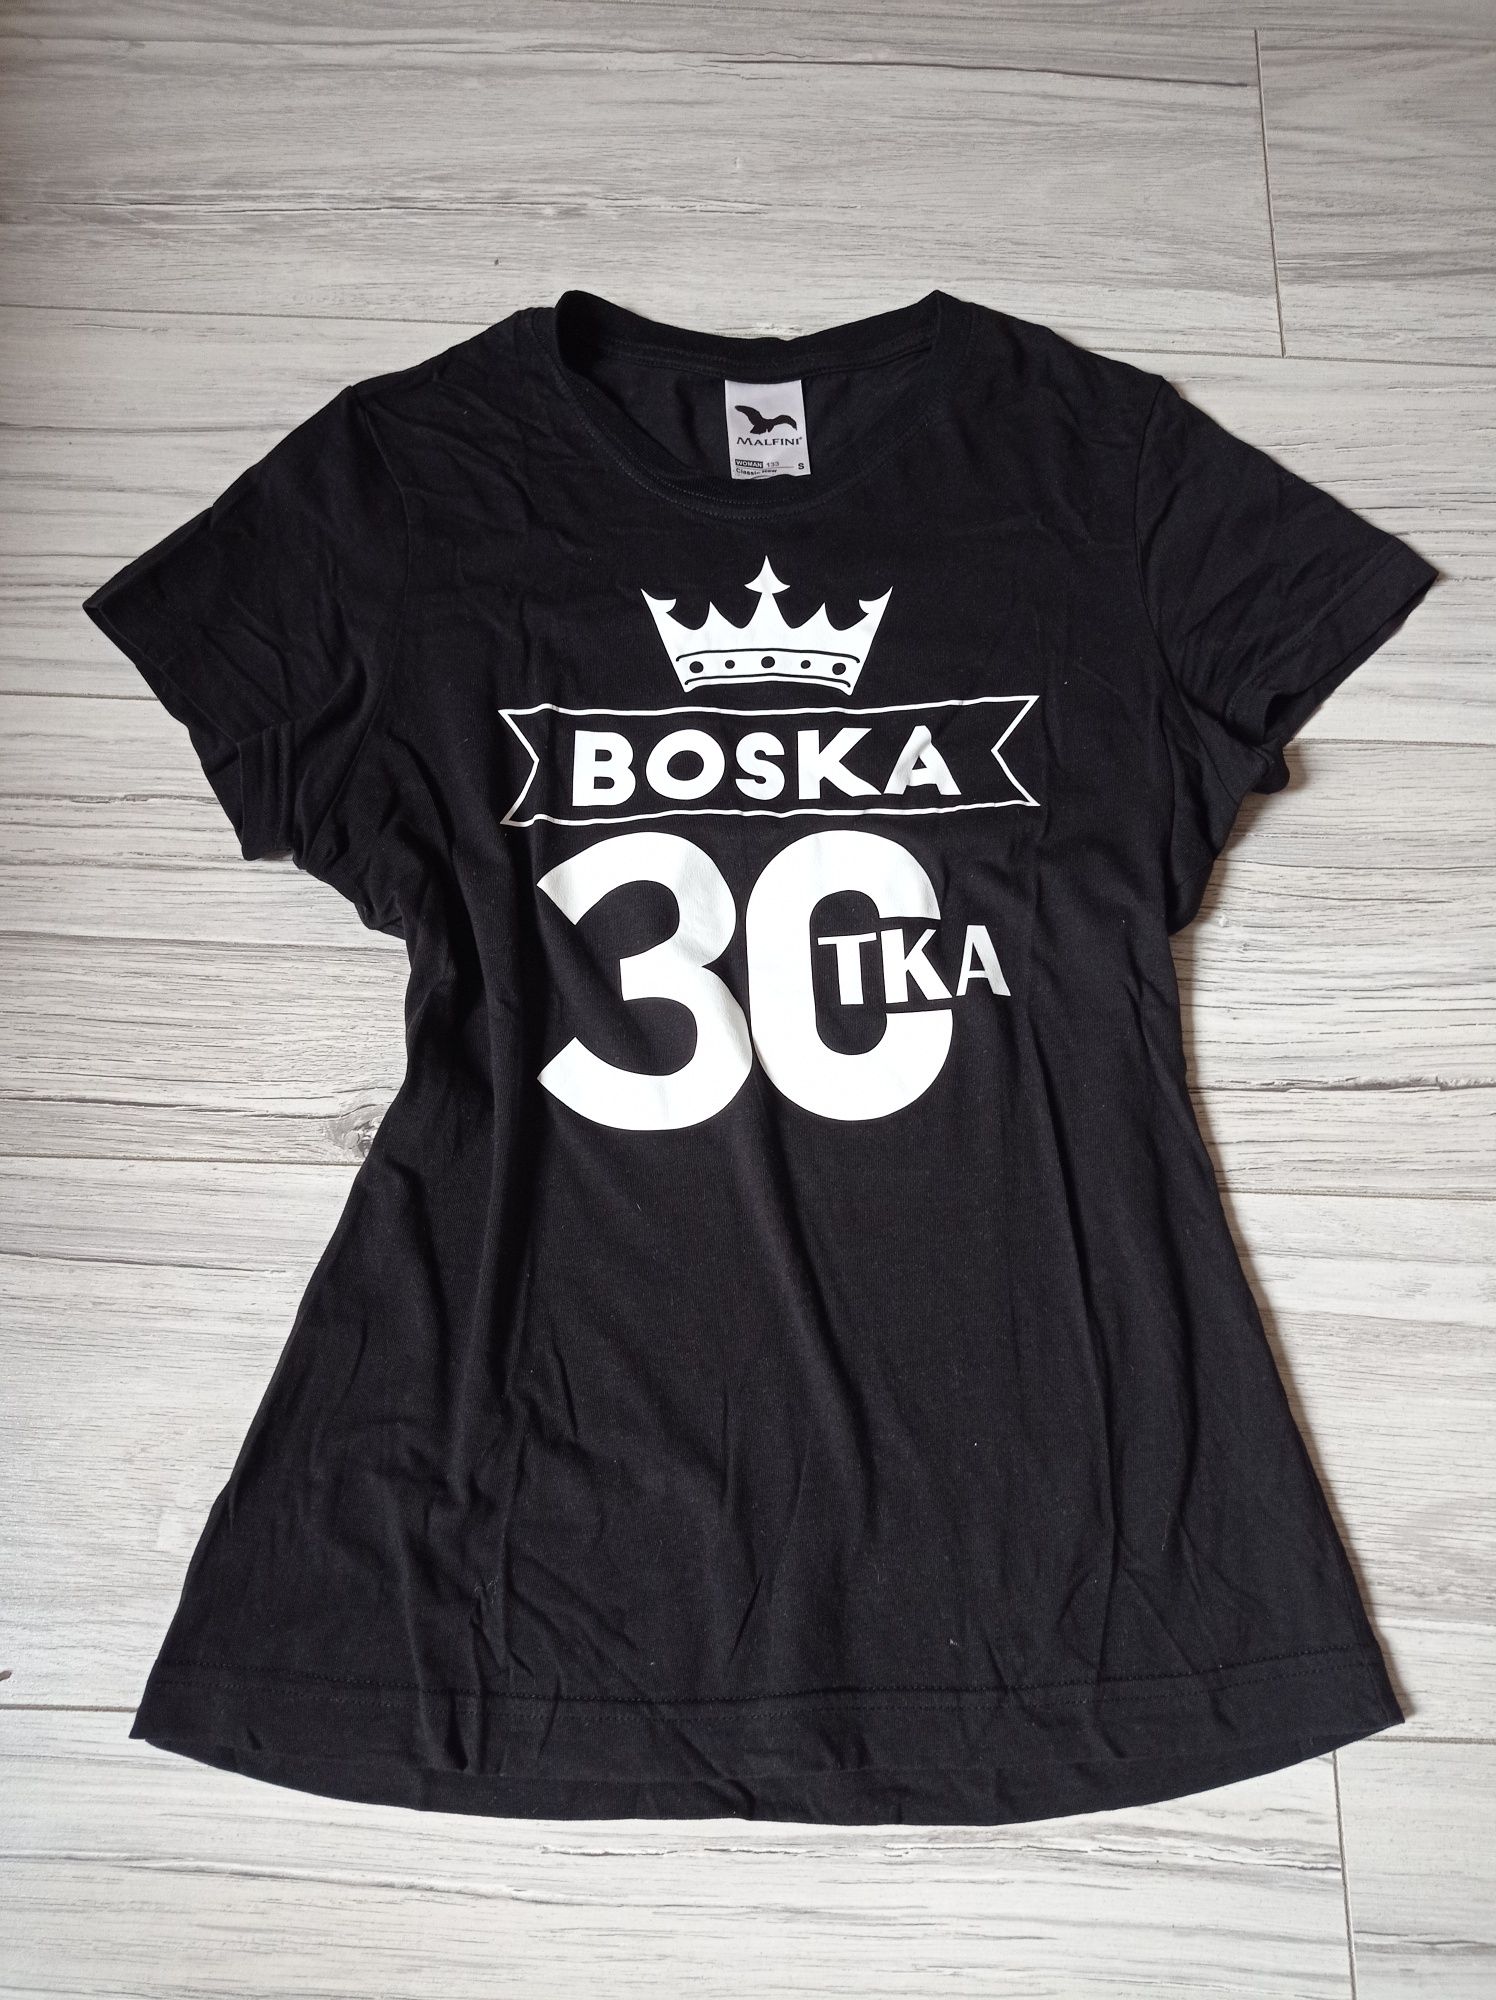 Koszulka urodzinowa 30 lat / boska 30tka Rozm S